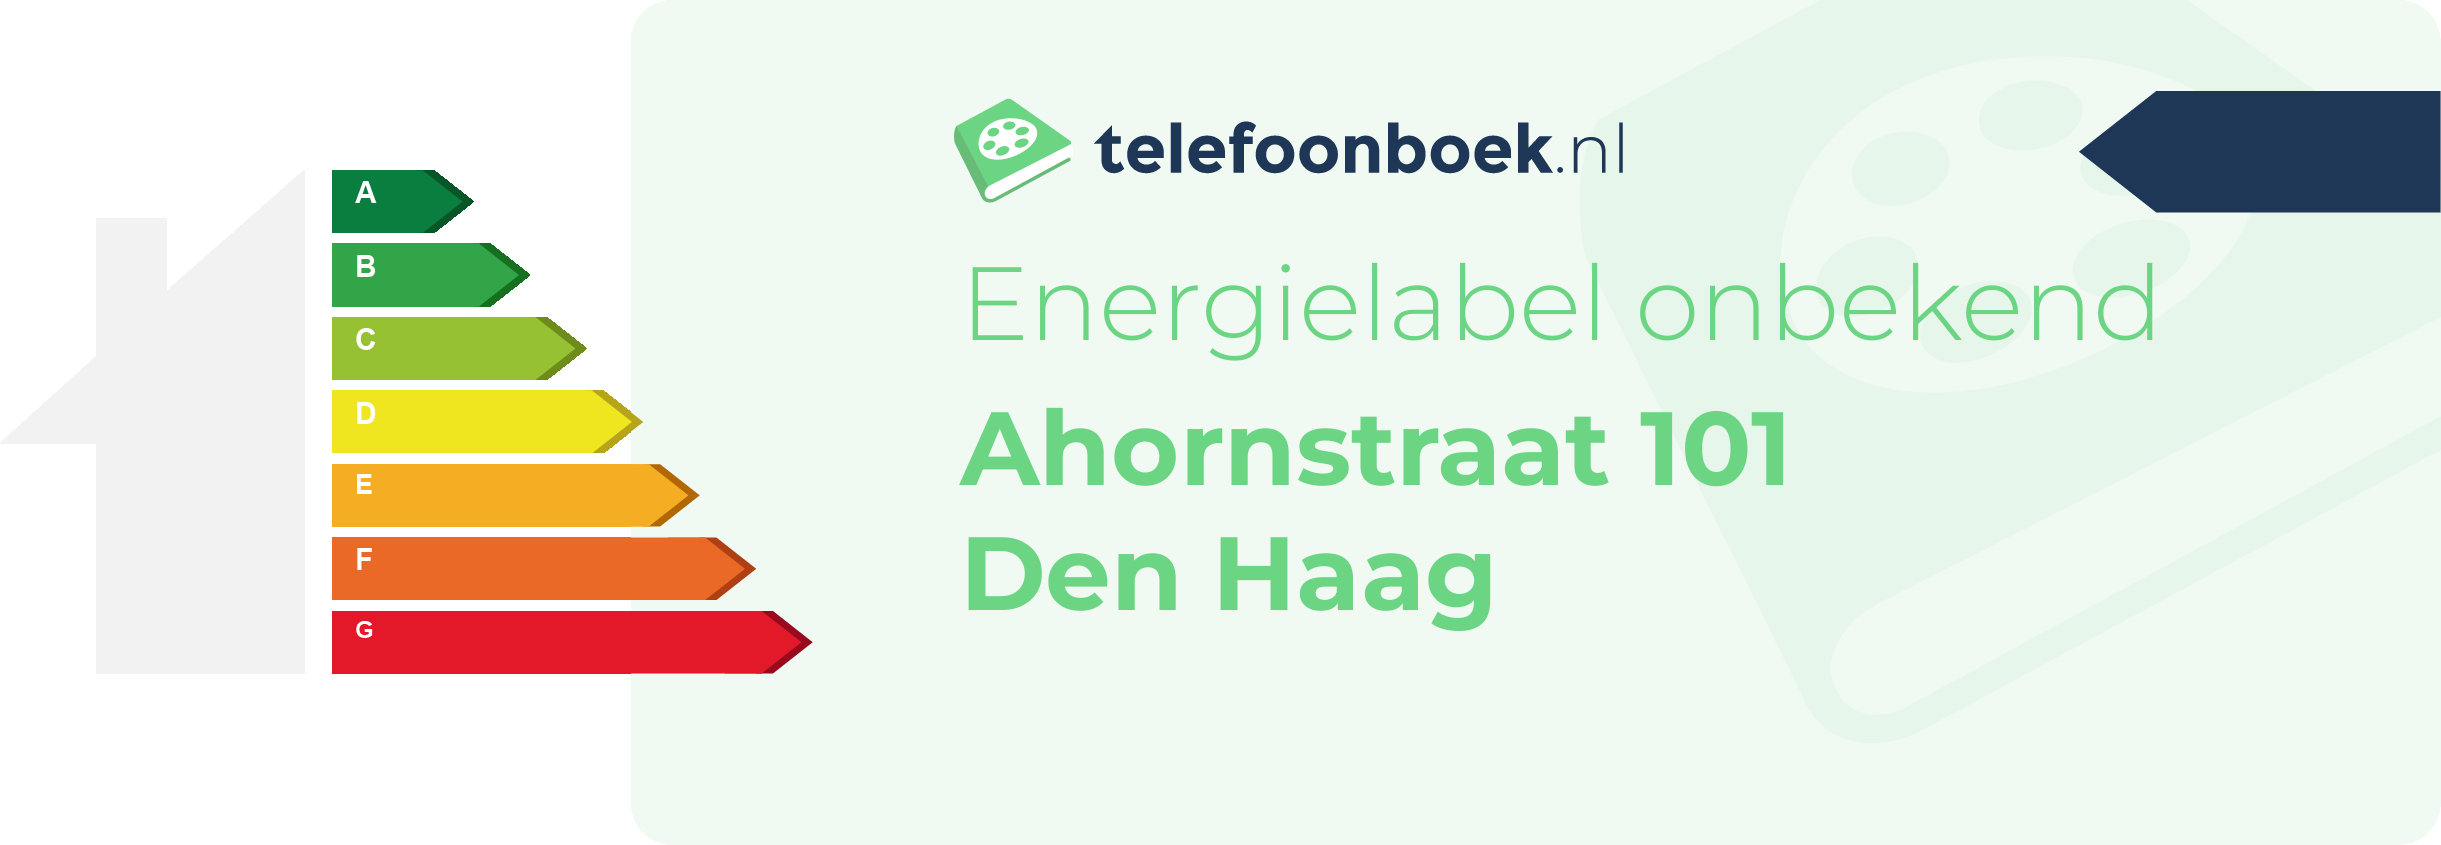 Energielabel Ahornstraat 101 Den Haag